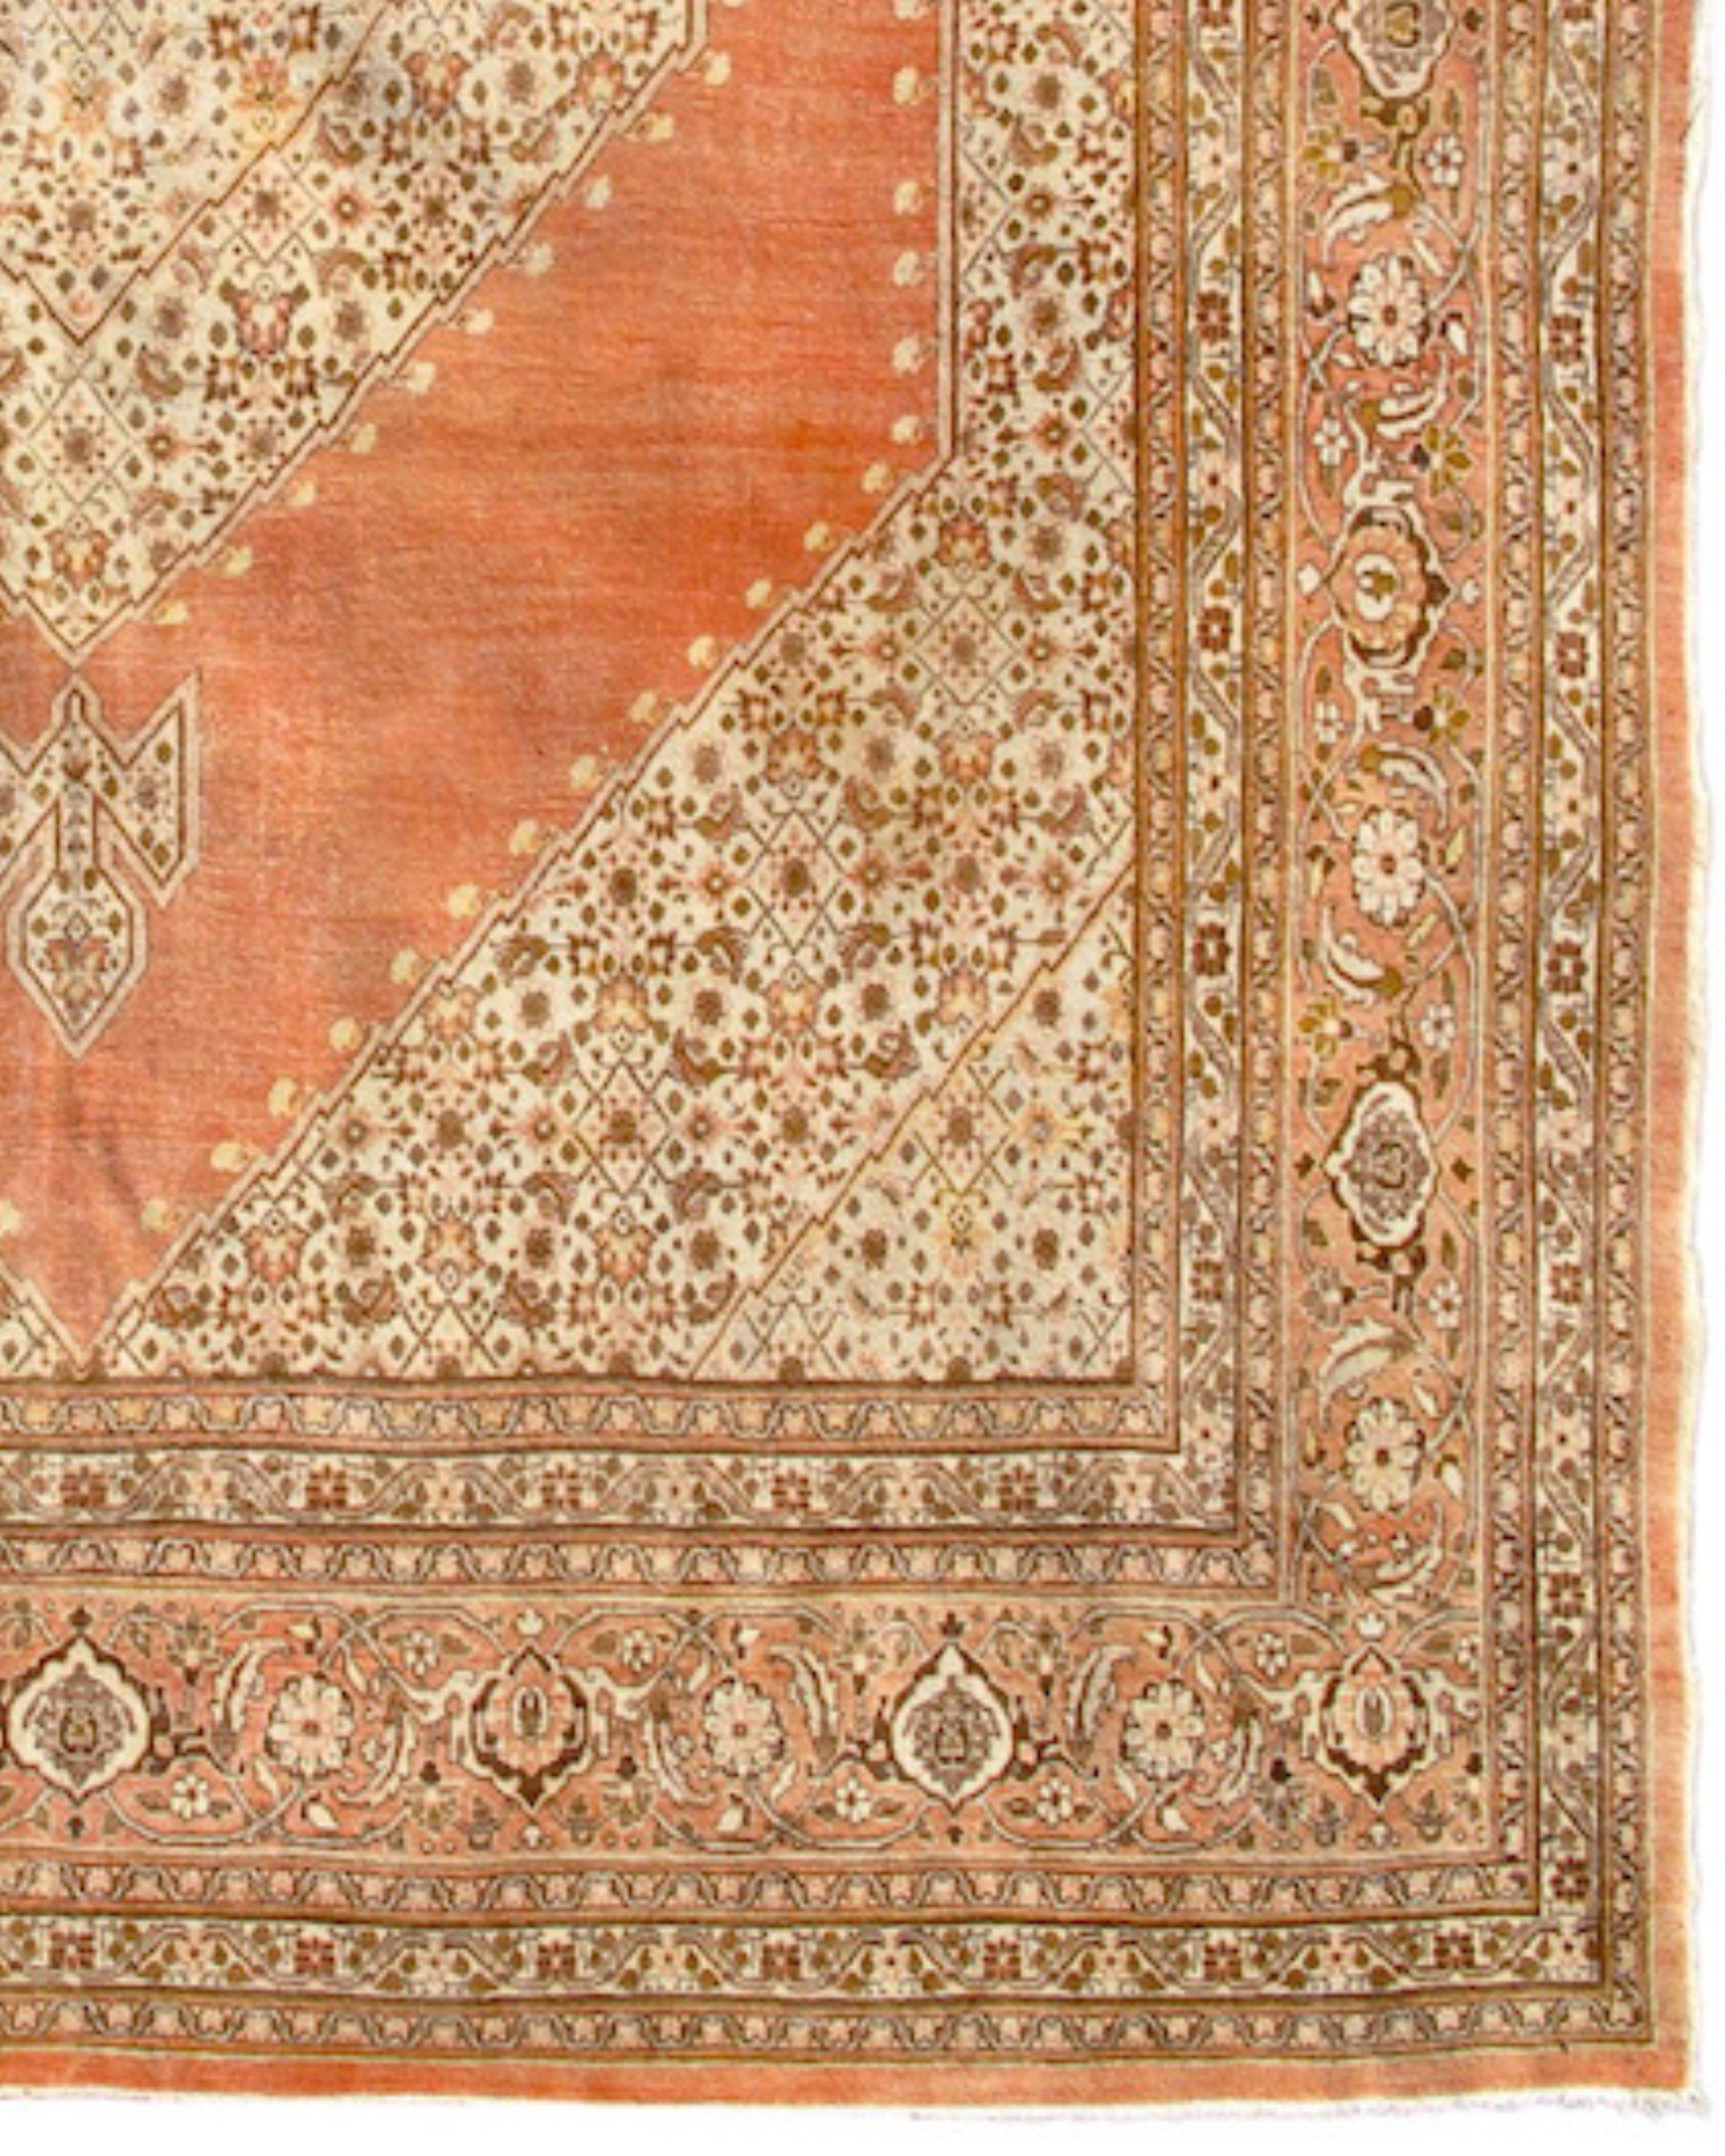 Antiker persischer Täbris-Teppich, um 1900

Dieser elegante Täbriz-Teppich schafft ein Gleichgewicht zwischen offenen Räumen und Bereichen mit feiner und präziser Zeichnung, die in einer sanften, harmonischen Palette von Creme- und Ockertönen